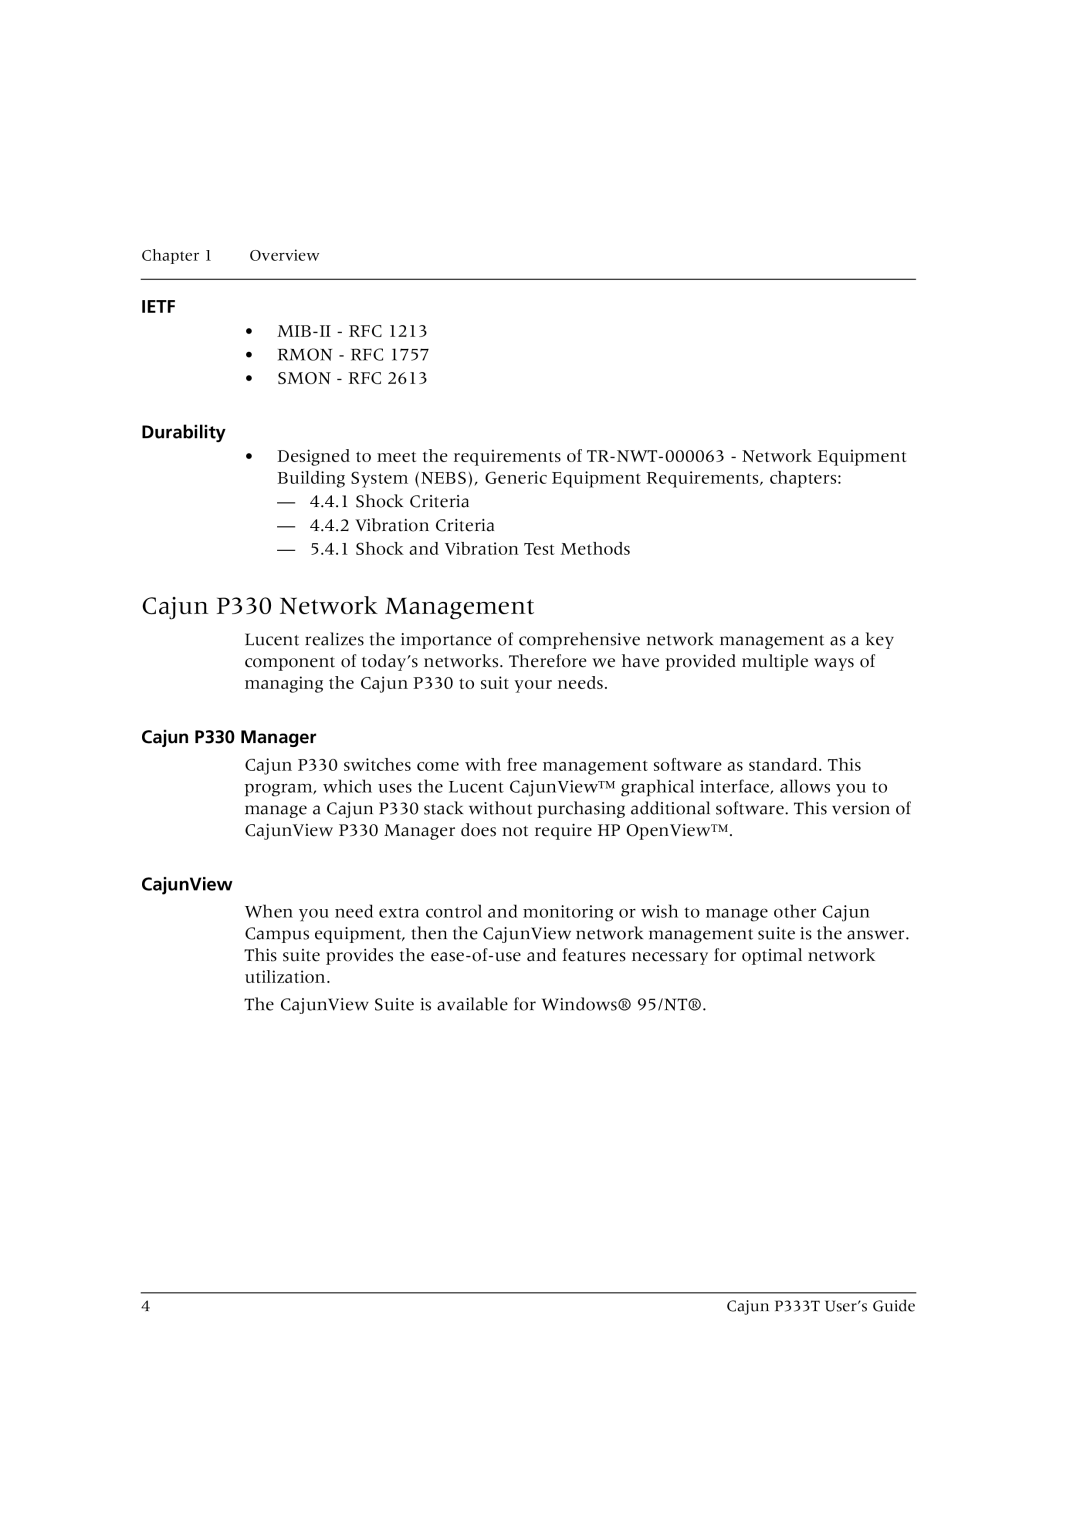 Lucent Technologies P333T manual Cajun P330 Network Management, Durability, Cajun P330 Manager, CajunView 